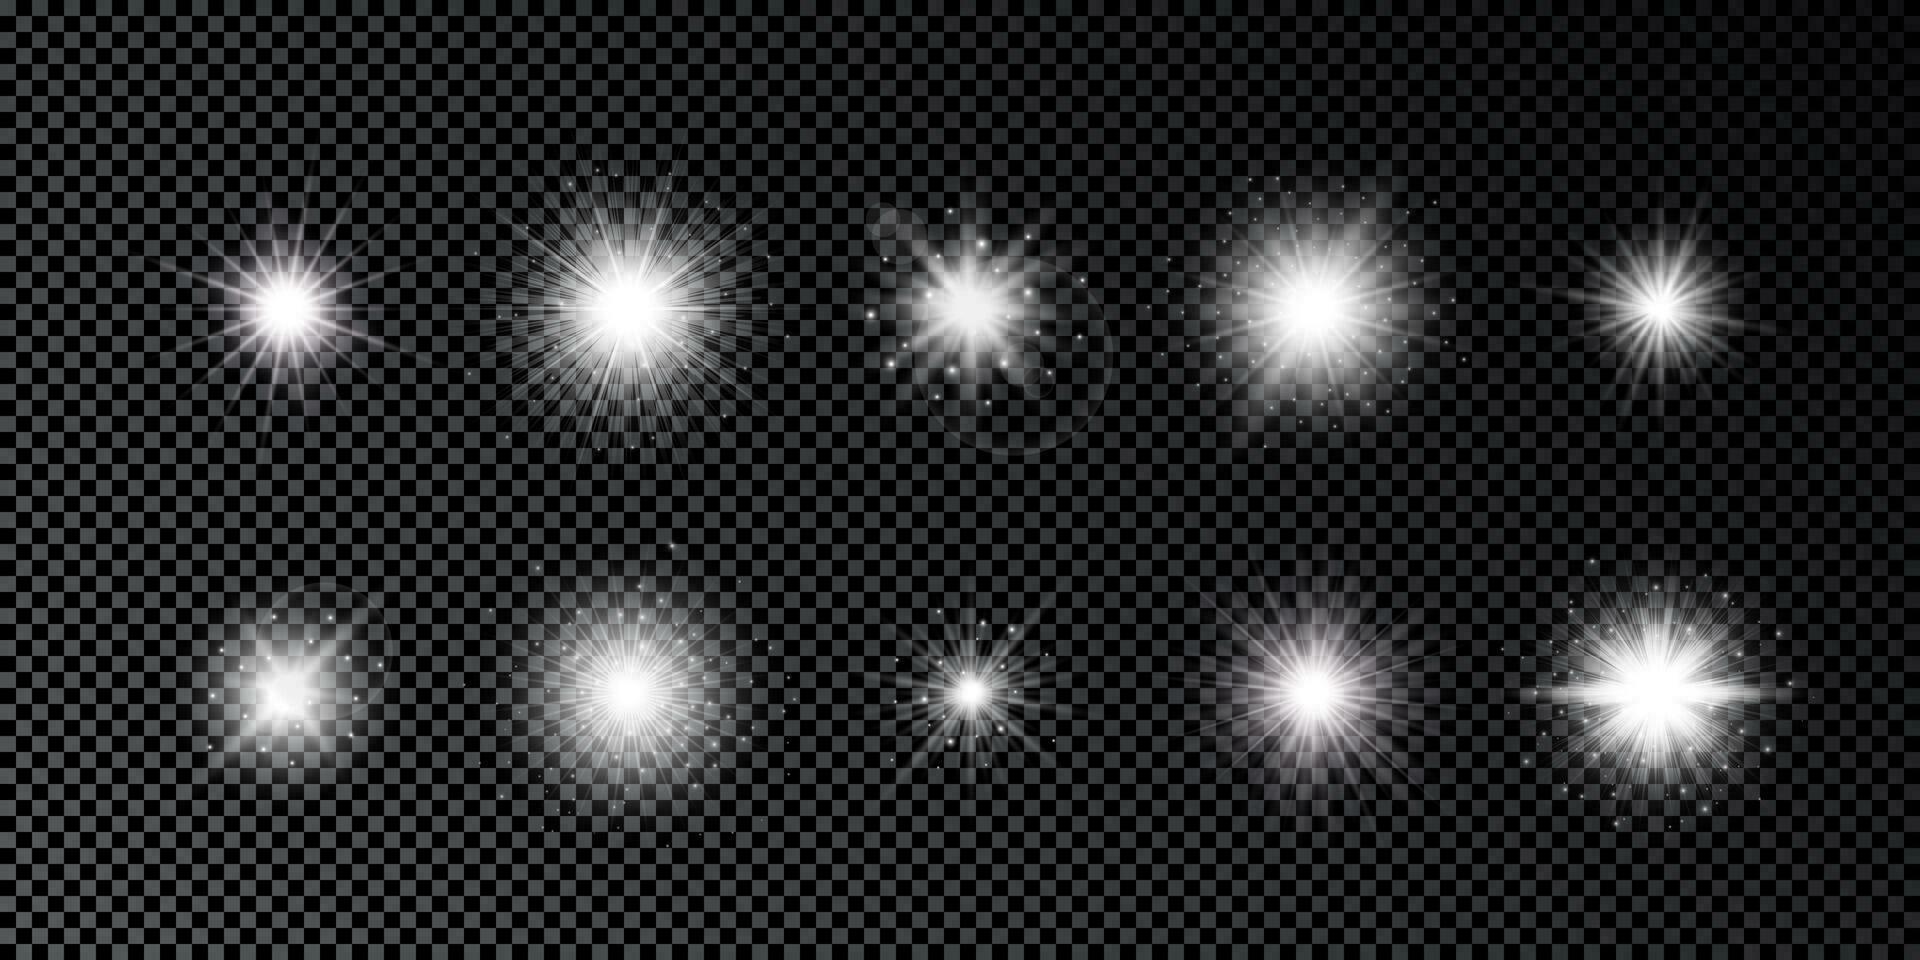 ljus effekt av lins bloss. uppsättning av tio vit lysande lampor starburst effekter med pärlar på en mörk bakgrund. vektor illustration